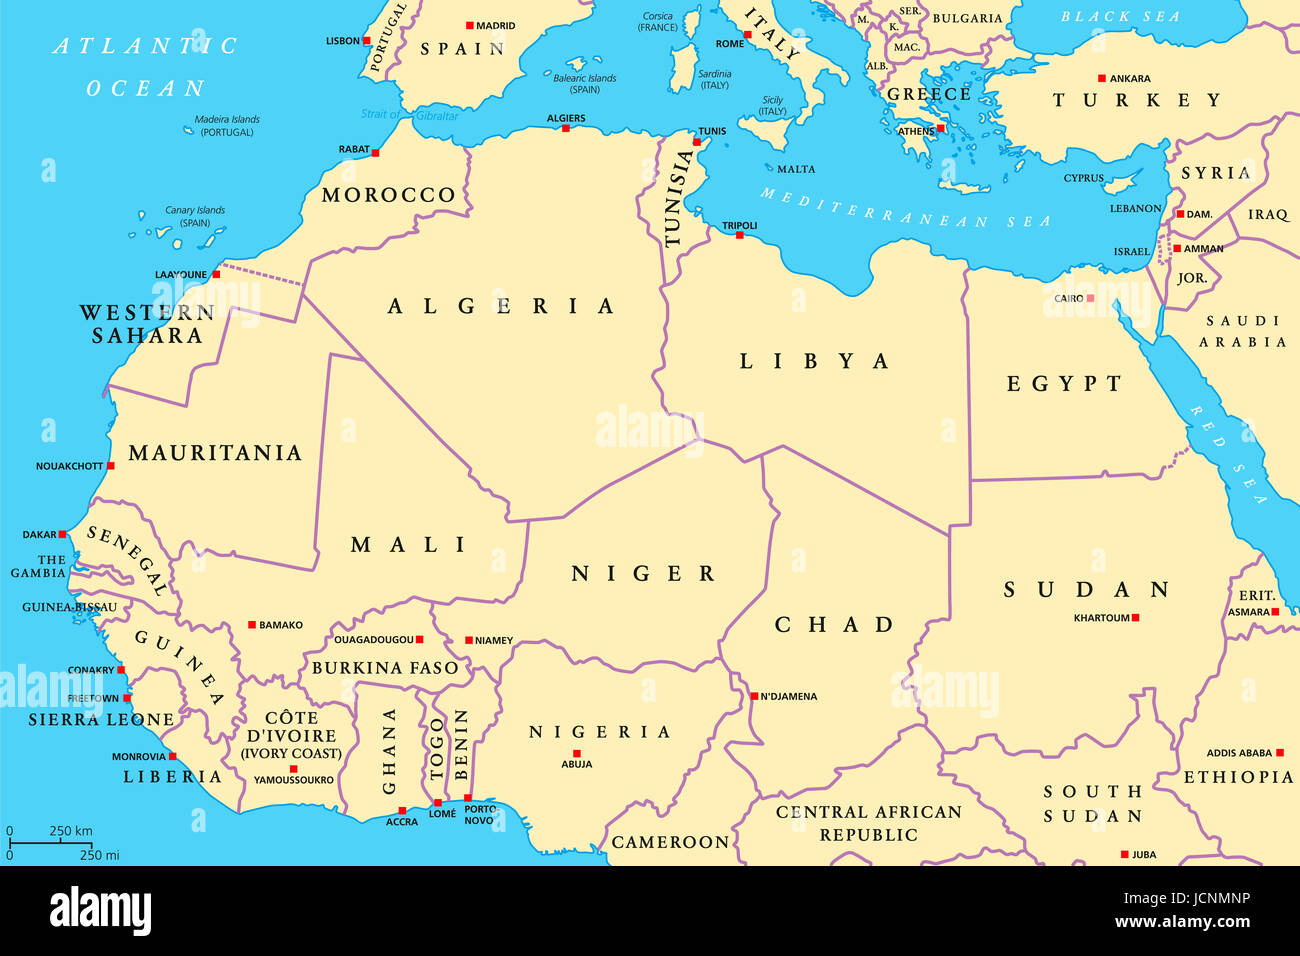 Les pays de l'Afrique du Nord une carte politique avec les capitales et les frontières. Rives de l'Atlantique du Maroc à l'Egypte et la mer Rouge. Maghreb. Banque D'Images